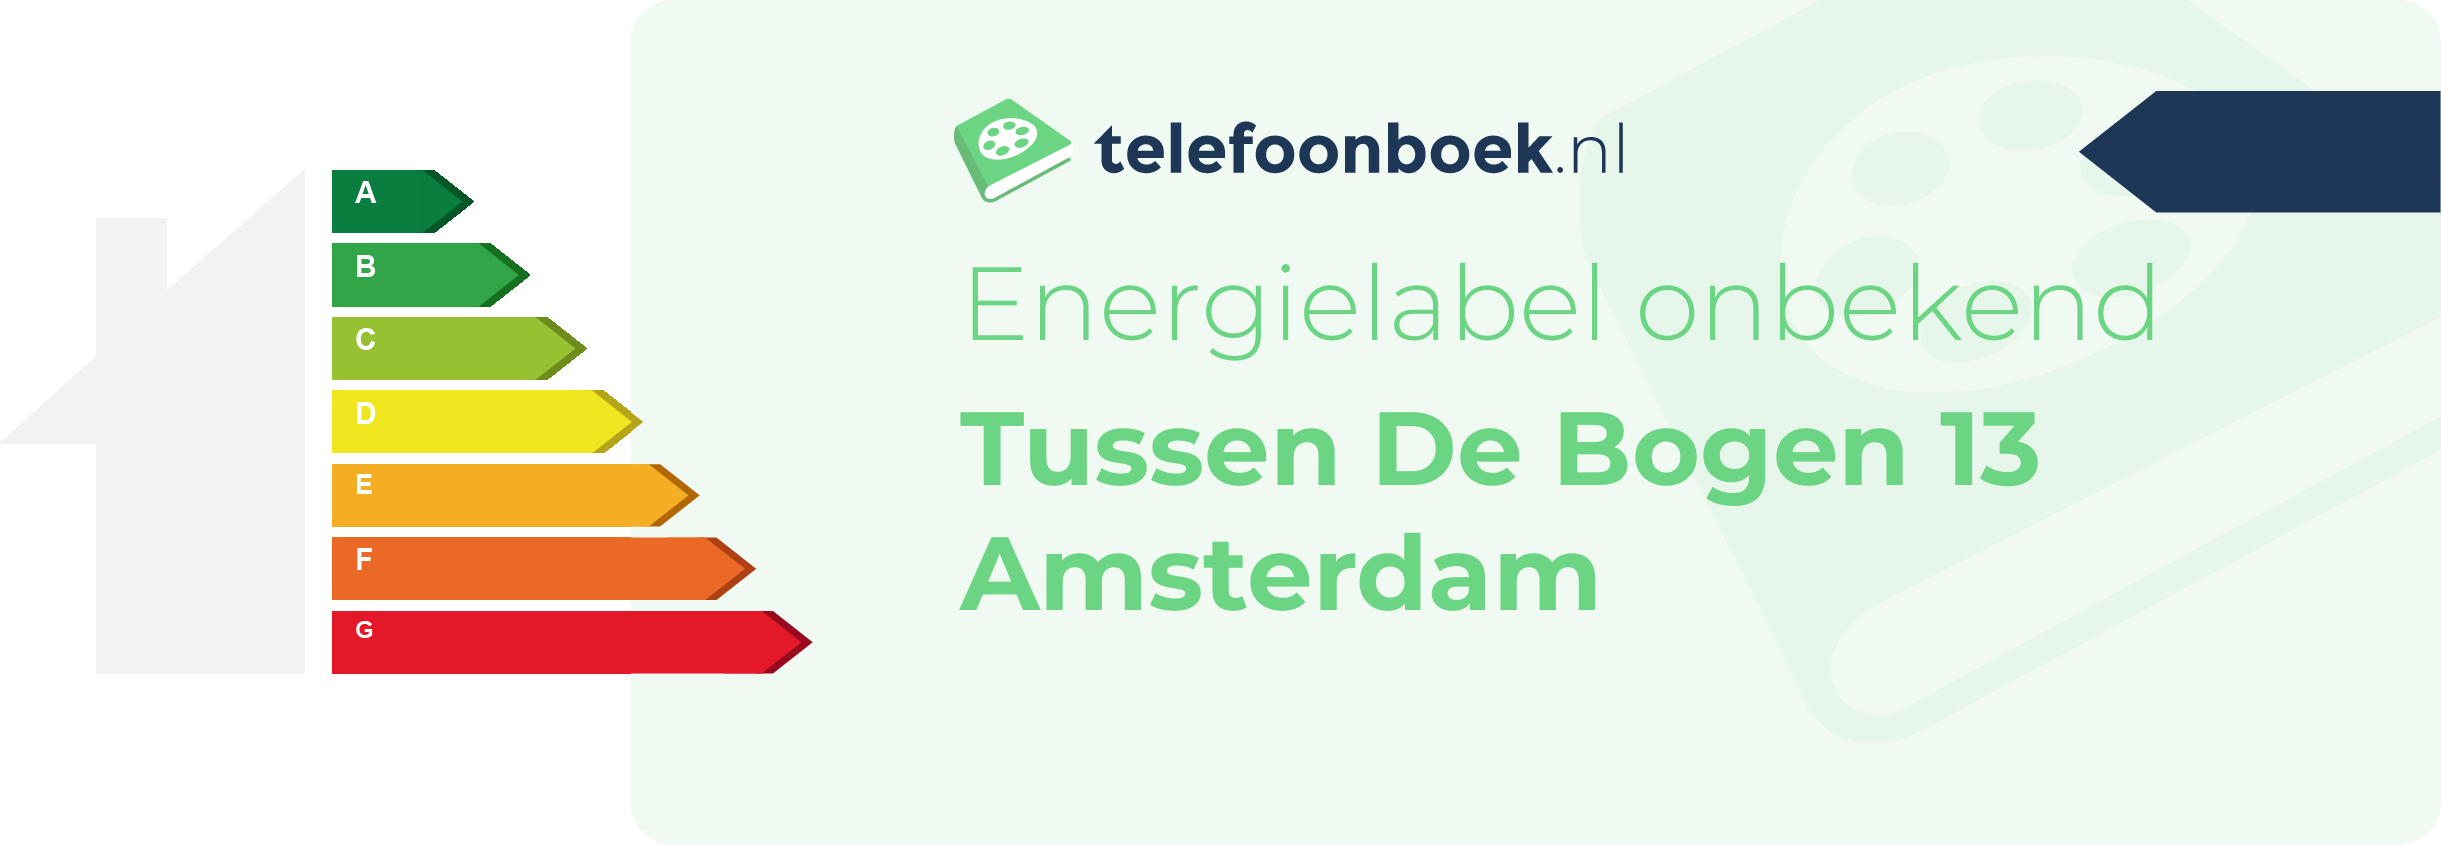 Energielabel Tussen De Bogen 13 Amsterdam